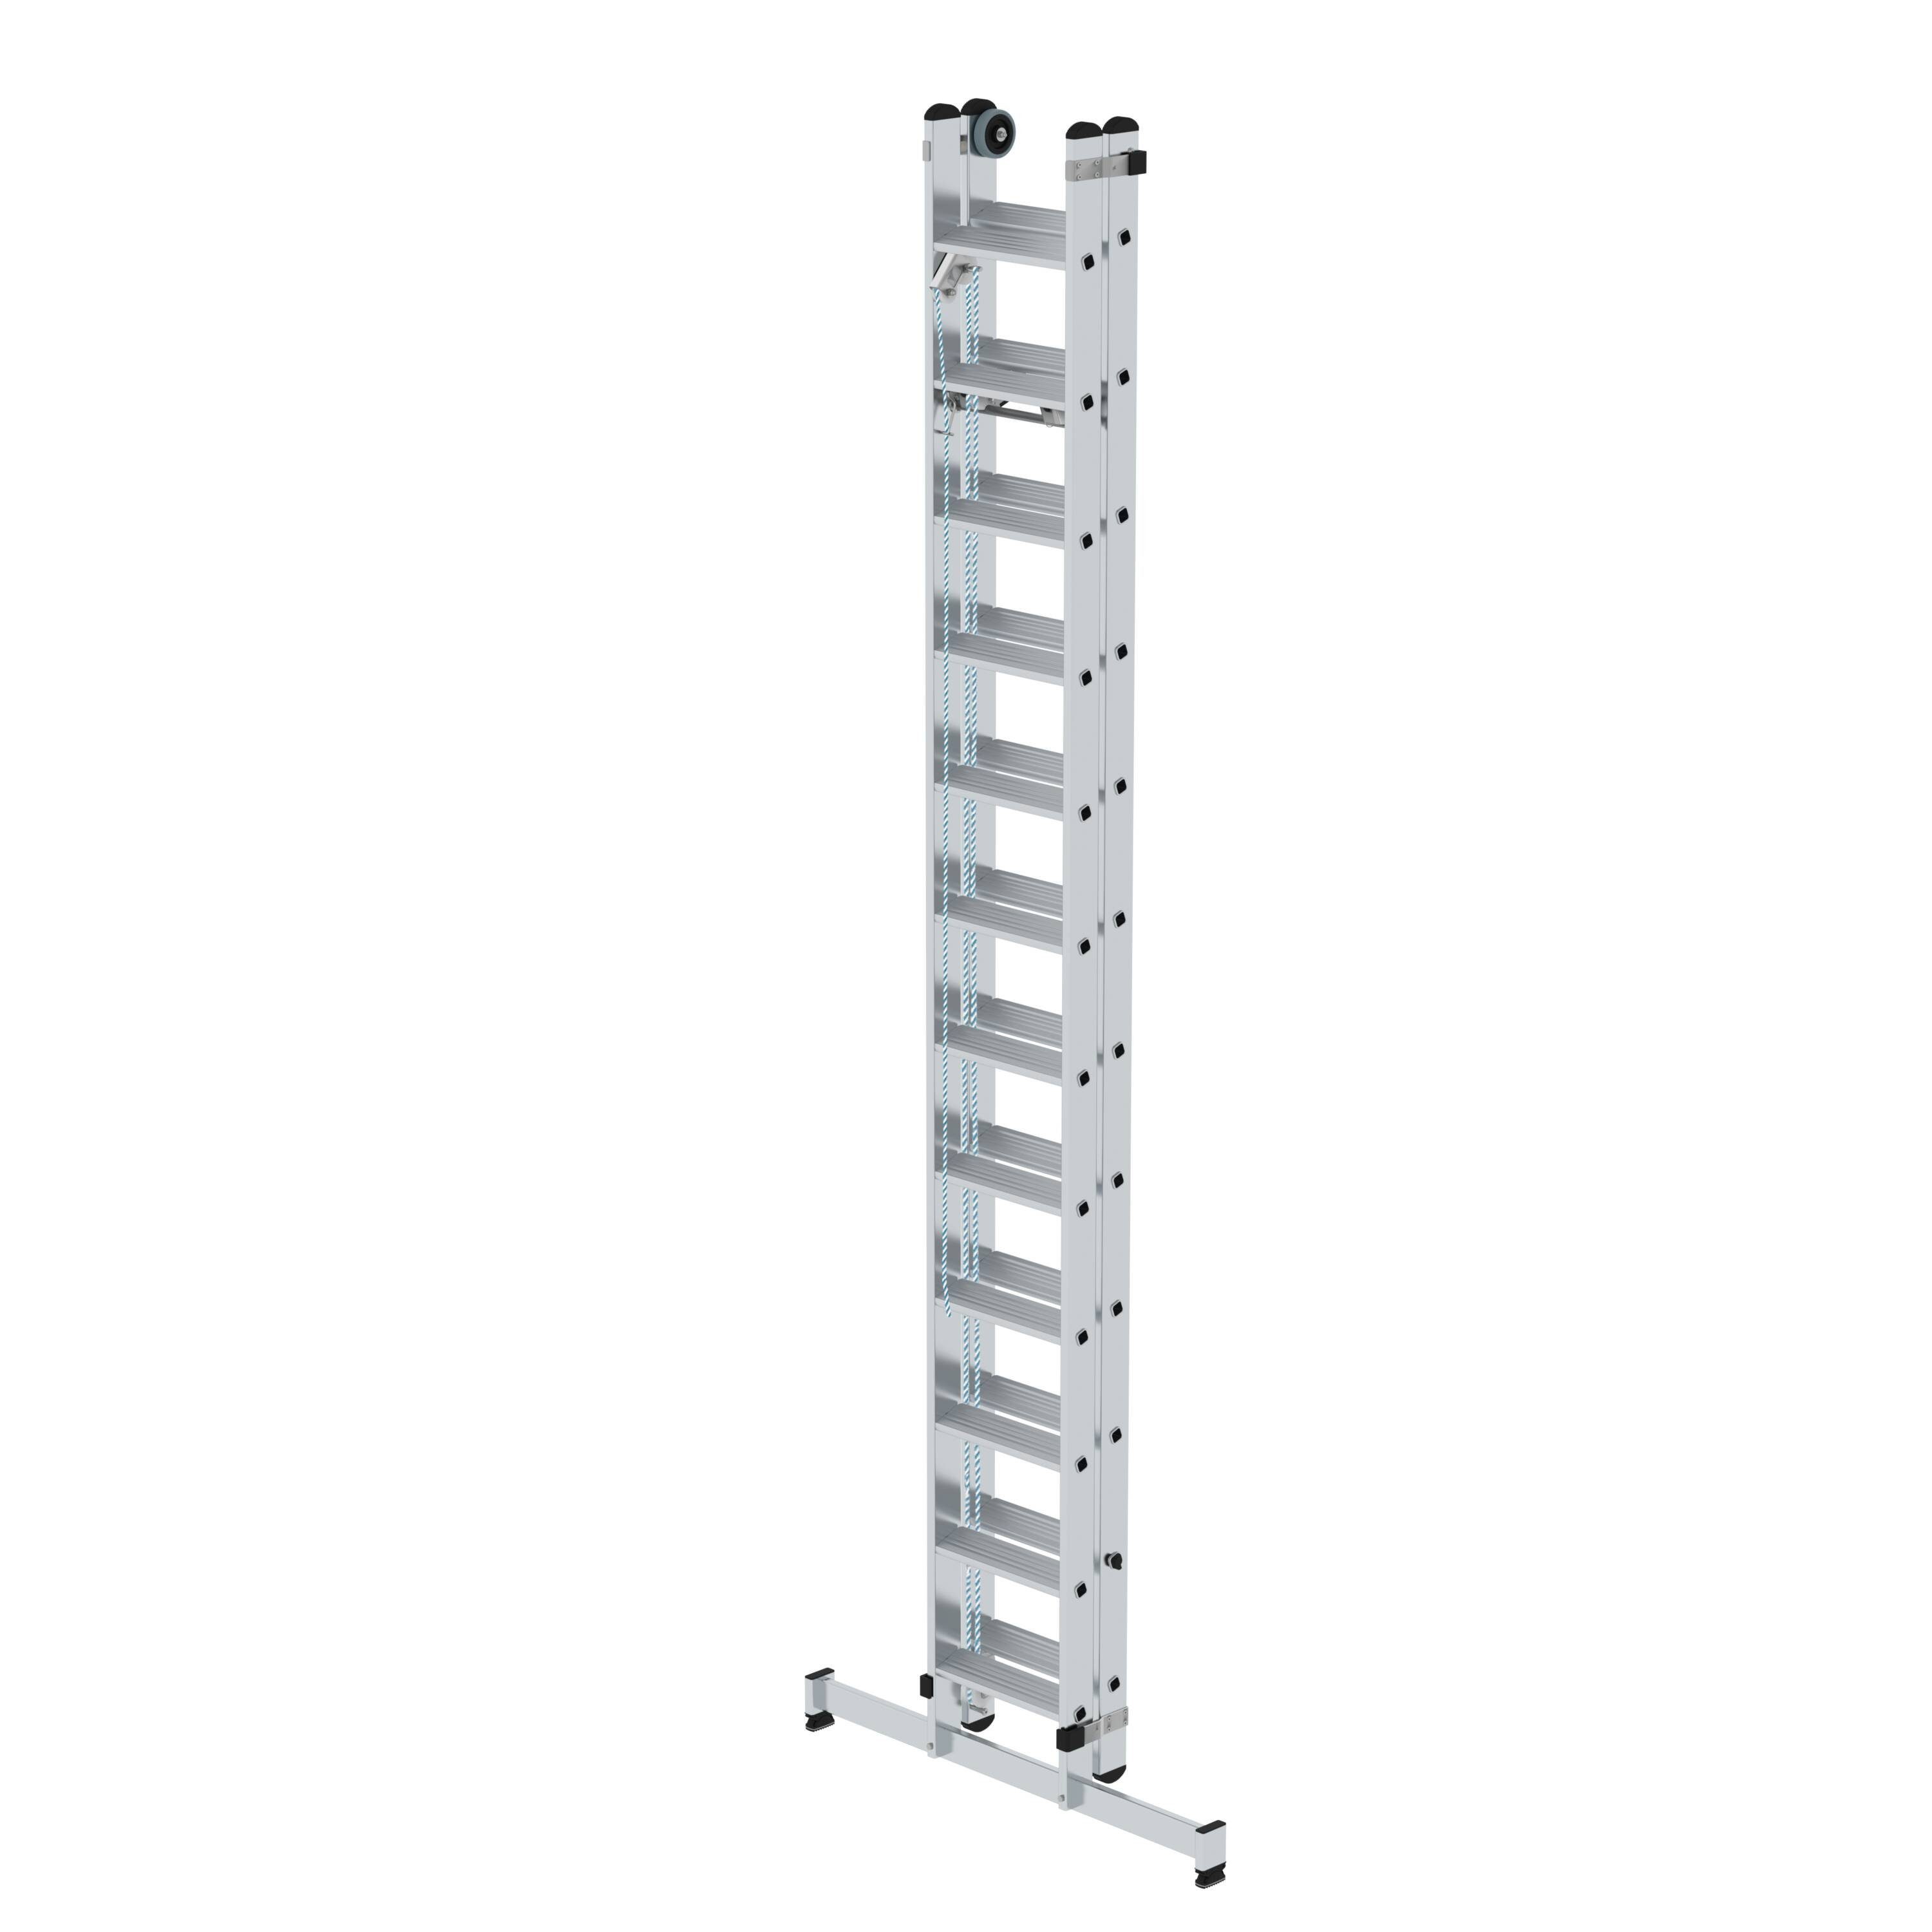 PROREGAL® Schiebeleiter Stufen-Seilzugleiter 2-teilig nivello® Traverse mit Stufen 2x12